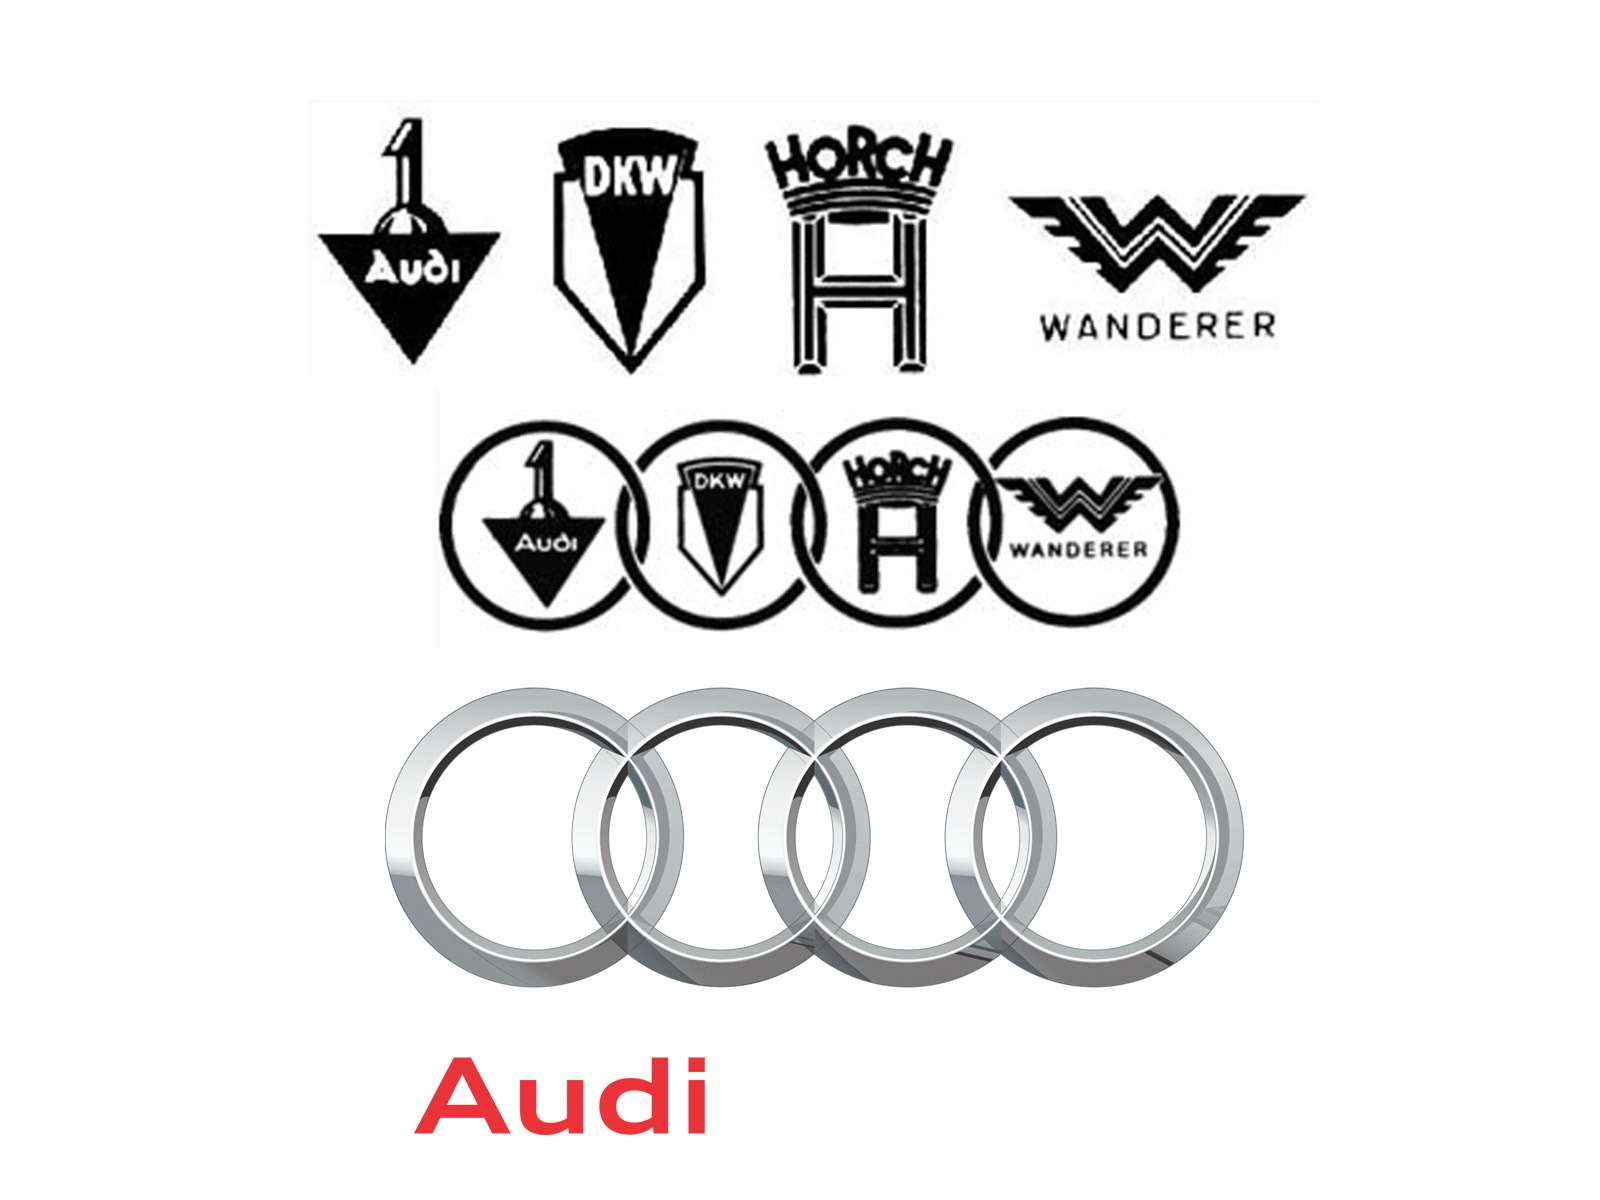 AUDI. В 1909 году четыре немецкие компании: Audi, DKW, Horch и Wanderer – объединились в концерн Audiwerke GmbH. Однако дела шли так себе, и в 1932-м четверка слилась, образовав единый бренд AutoUnion, логотип которого представлял собой четыре связанных в цепь кольца. Внутрь каждого был вписан логотип одной из прежних компаний. Впоследствии громоздкую эмблему упростили – в 1985-м она приняла знакомый нам вид. Семь лет назад – в 2009-м – логотип Audi слегка освежили.